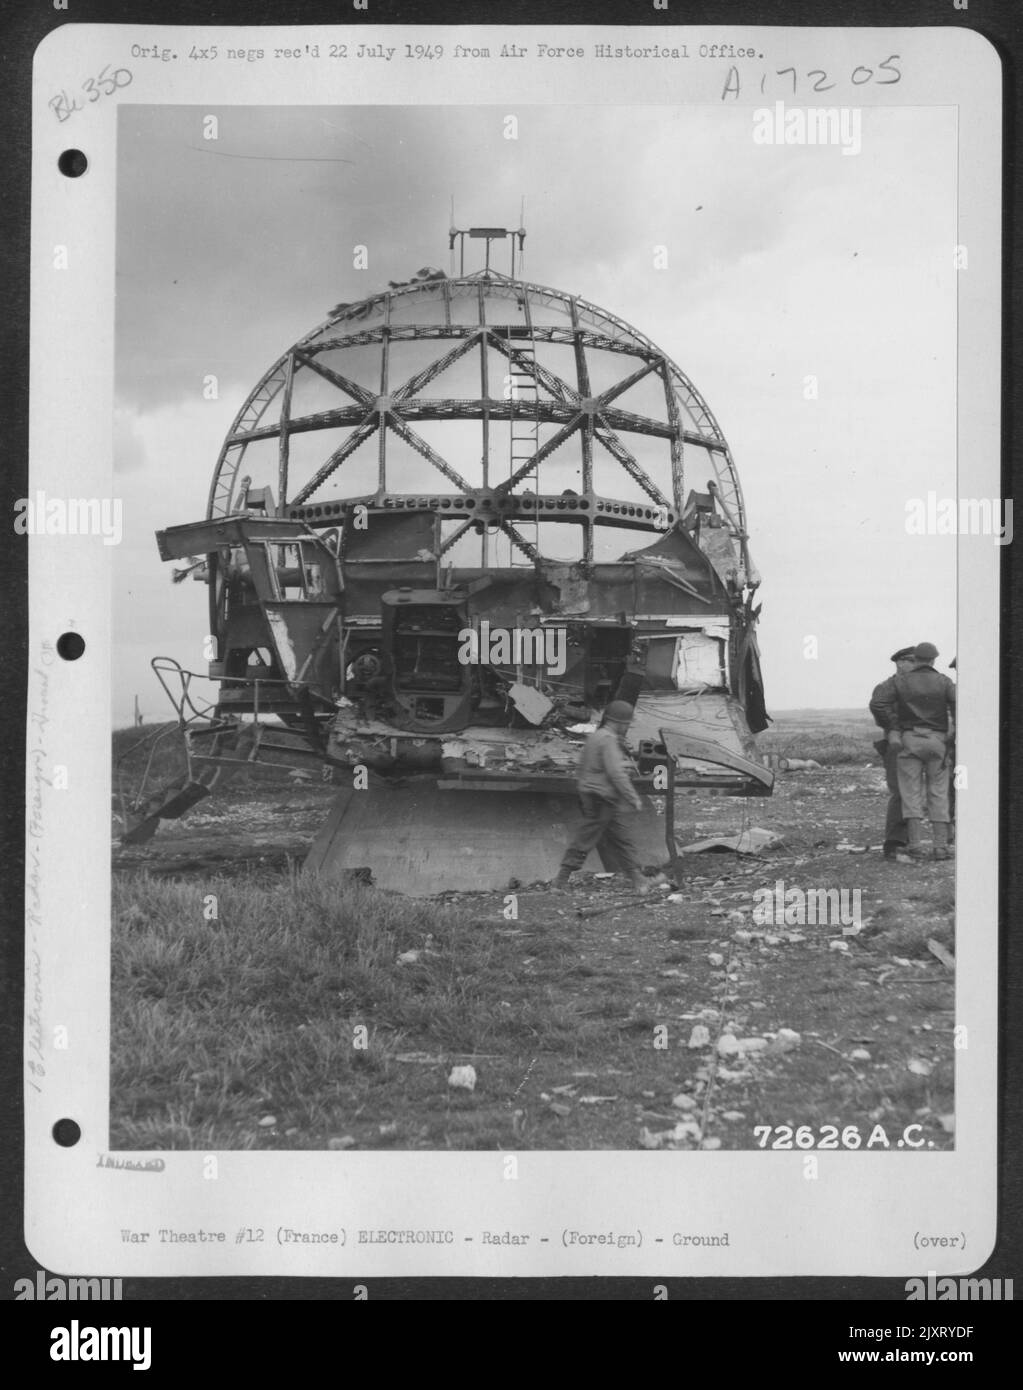 Radarinstallation Des Deutschen Riesengebirges Würzburg Am Strand Der Normandie, Frankreich. 22. Juni 1944. [W?rzburg Riese FuMG 65 Radar.] Stockfoto